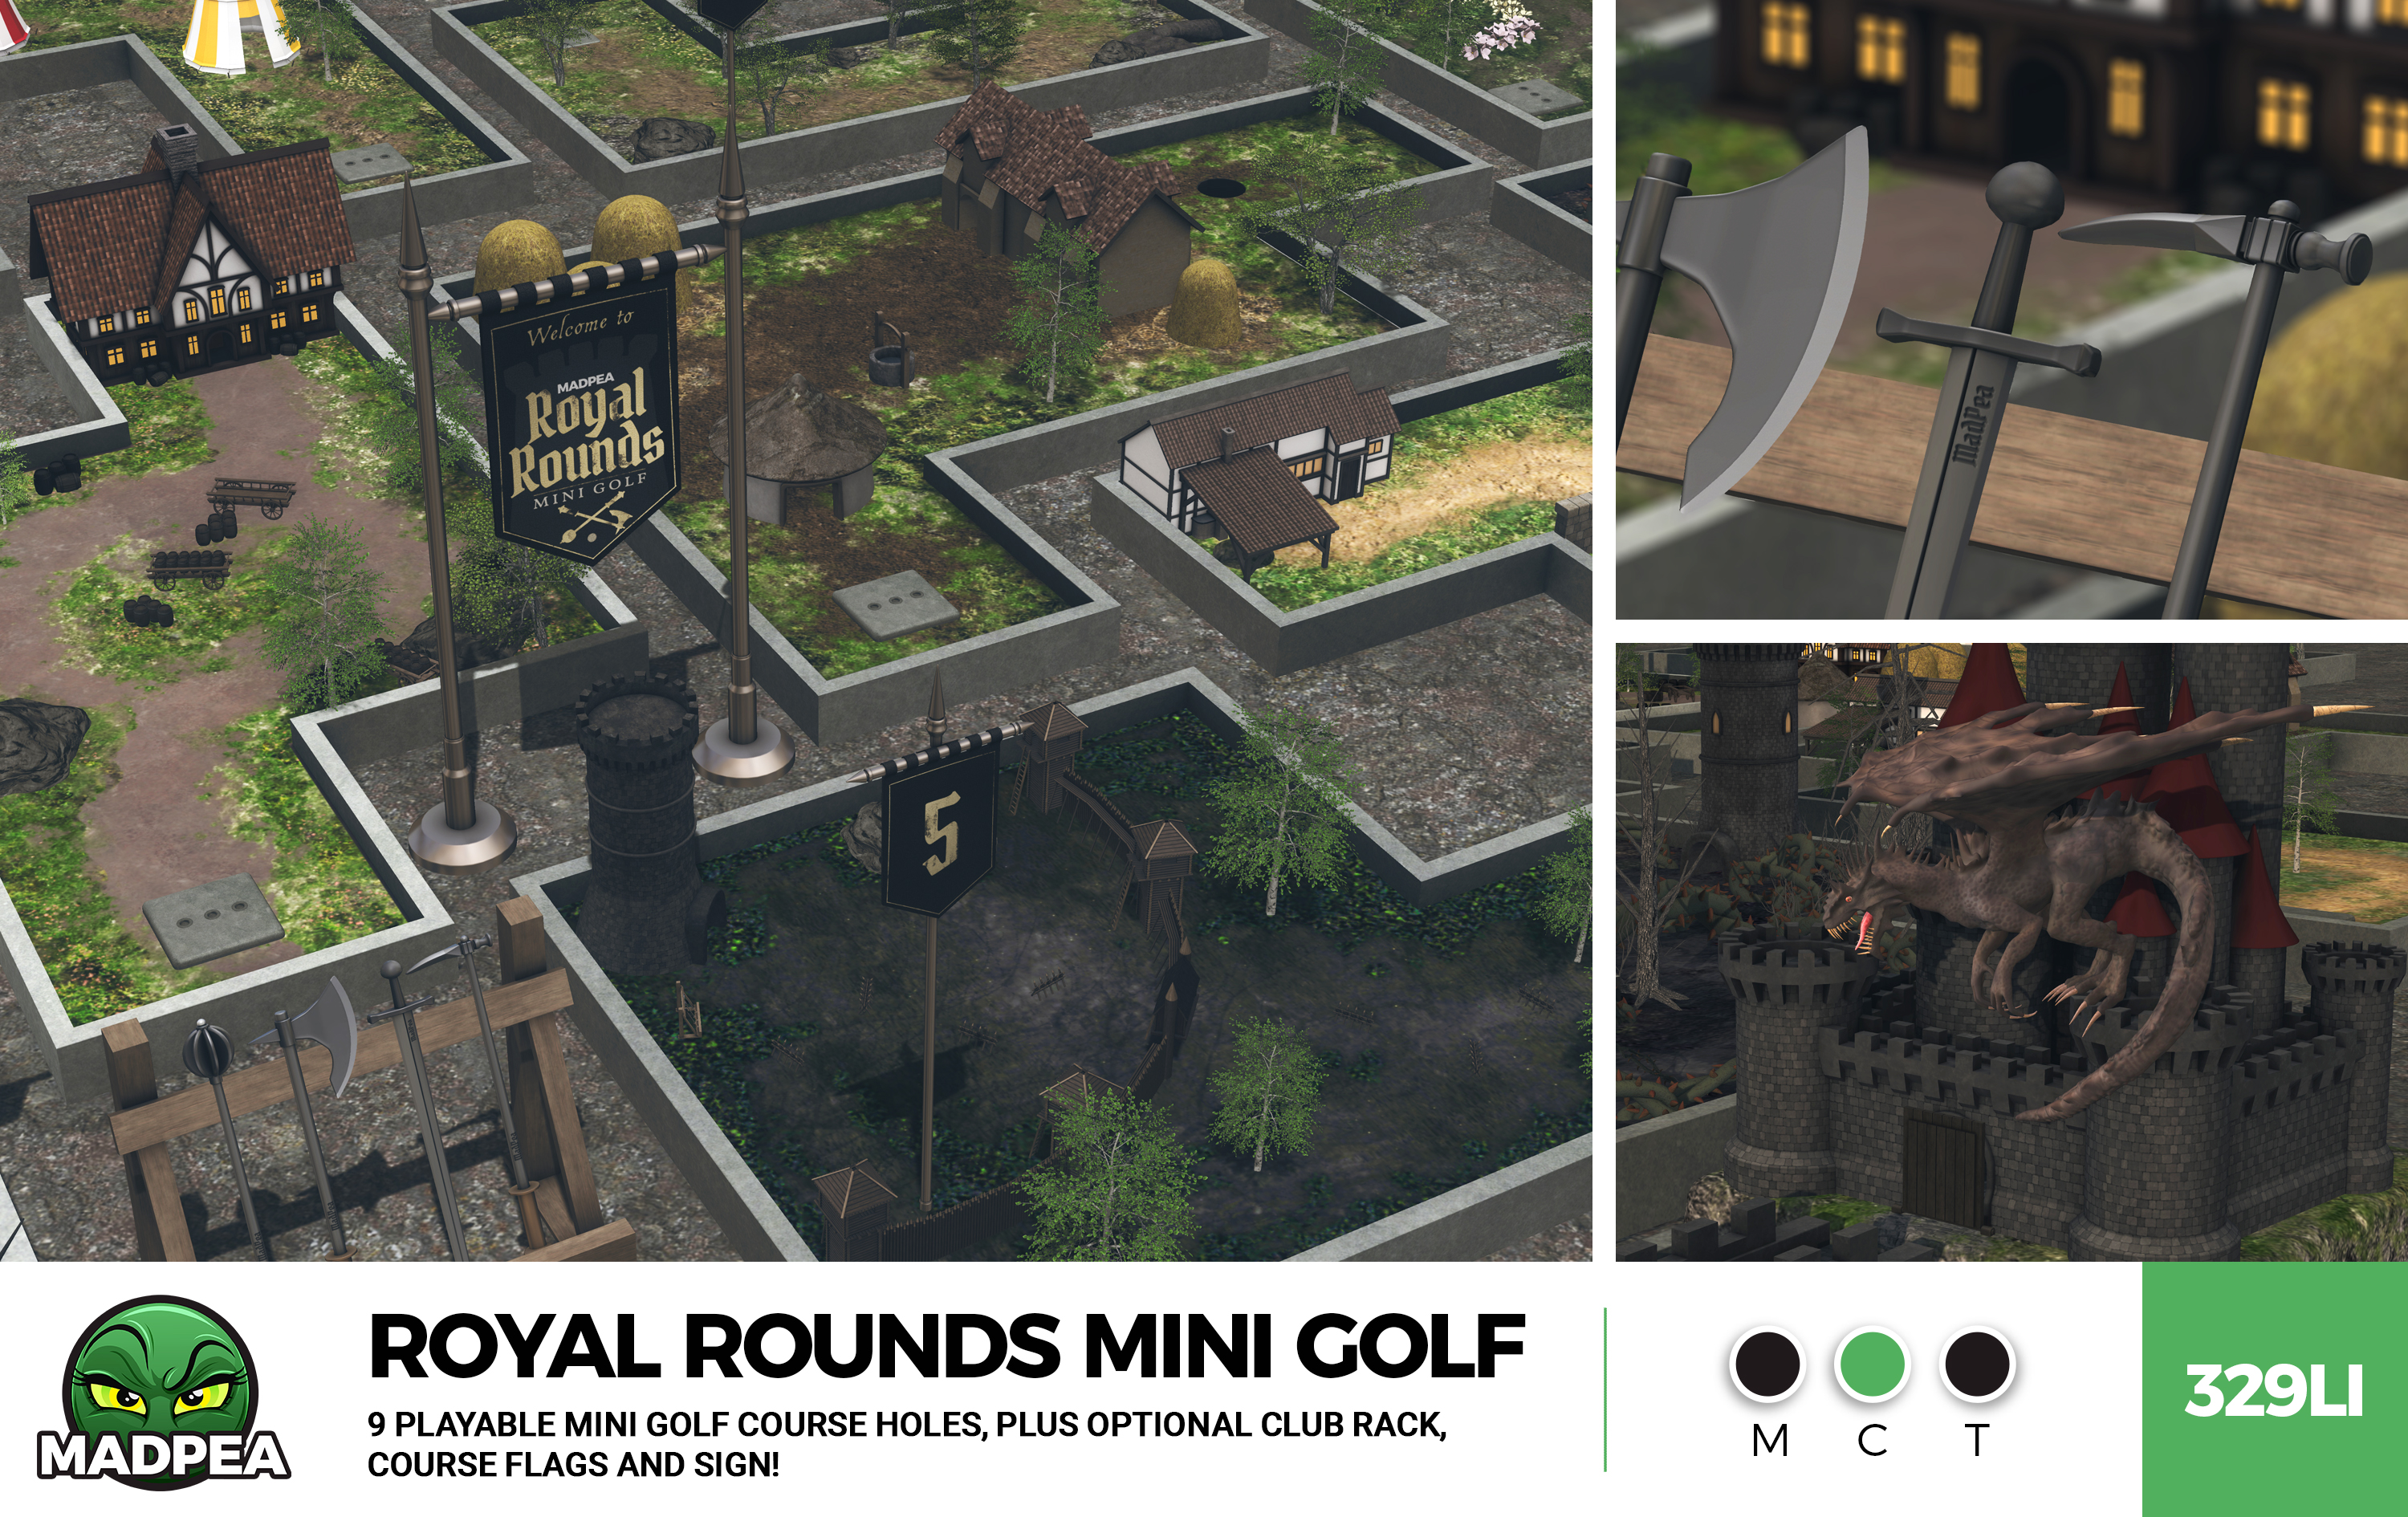 Madpea – Royal Rounds Mini Golf